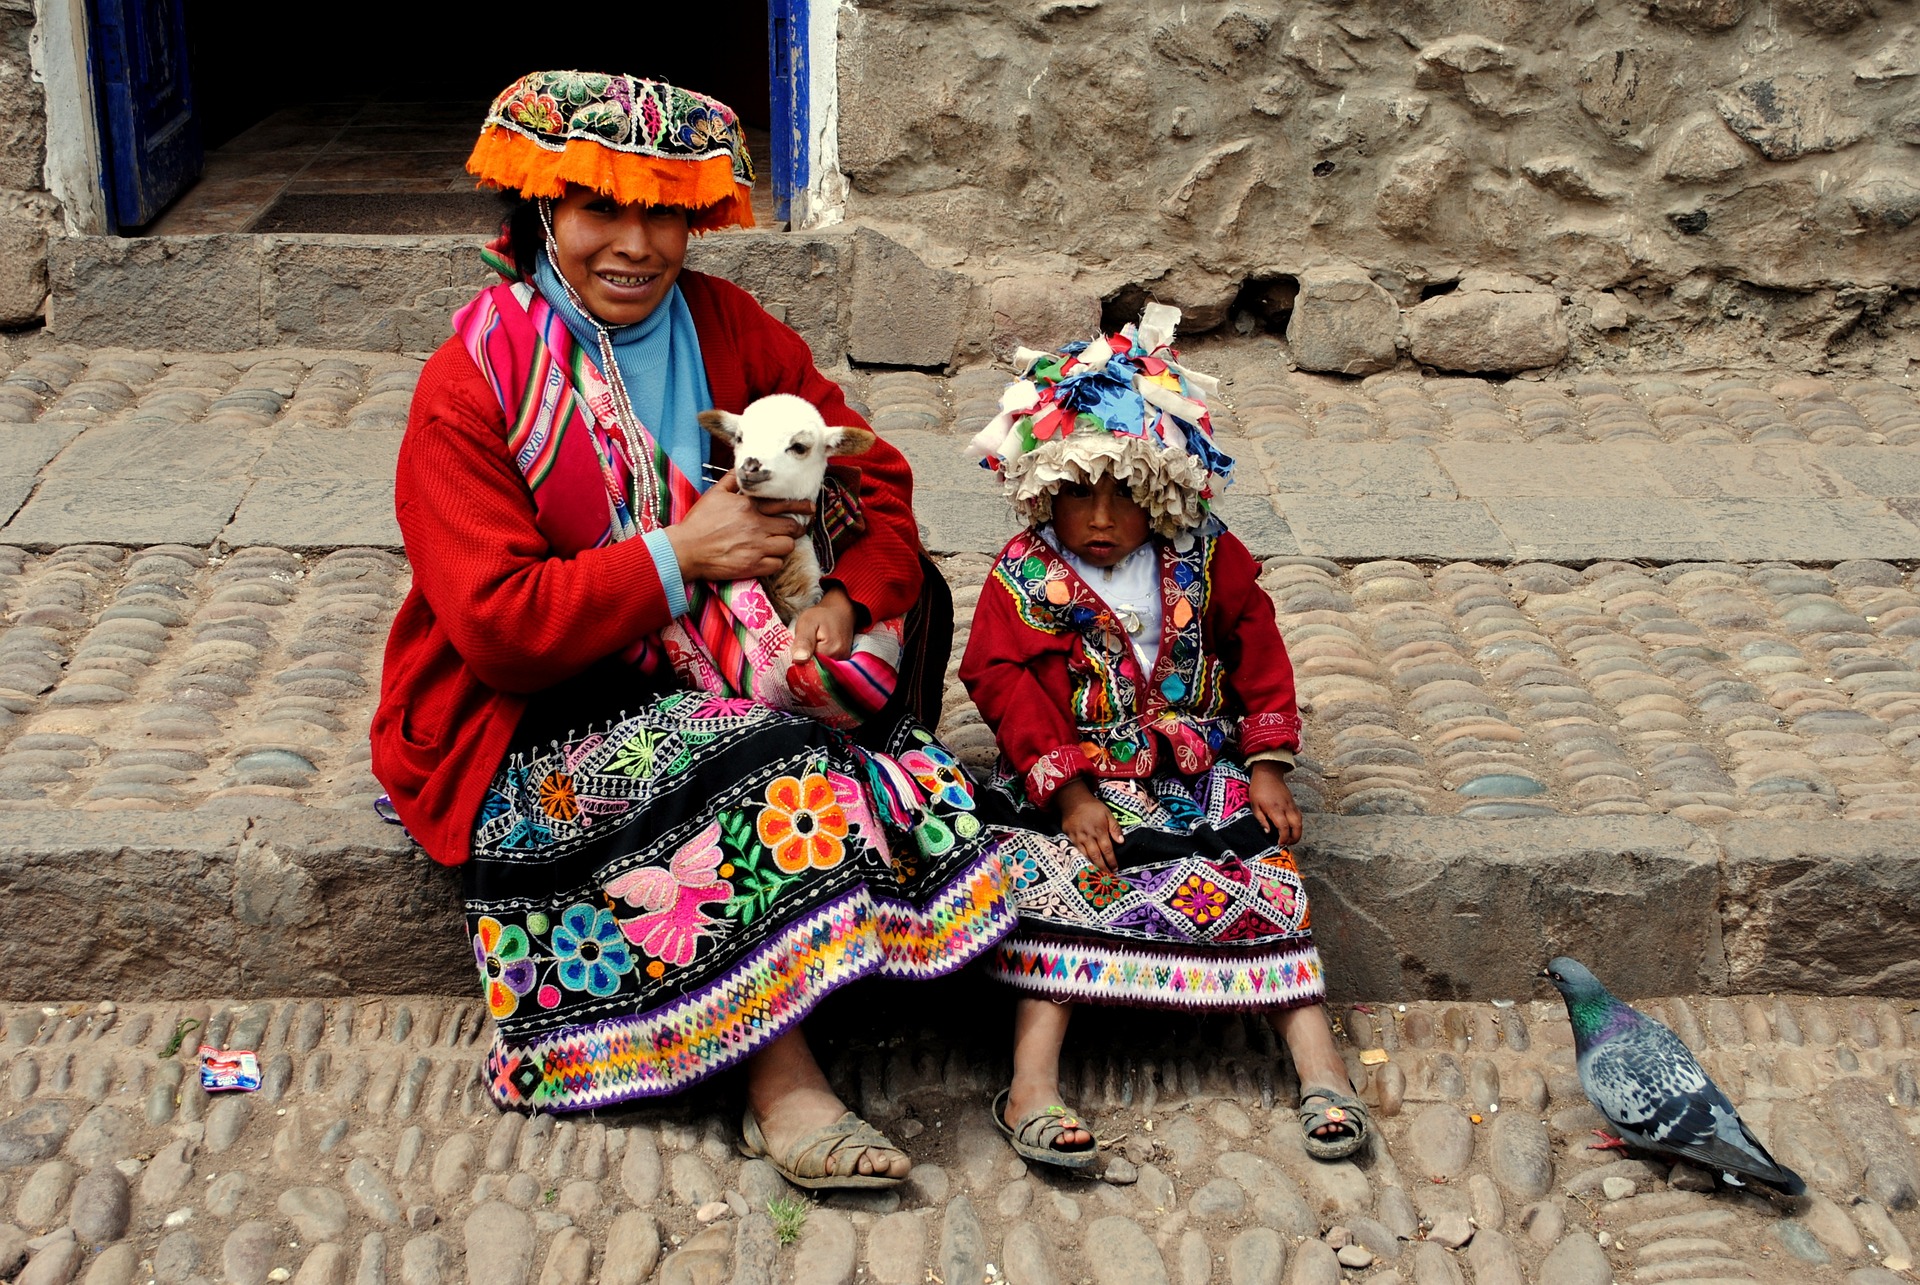 Mutter und Kind der Peru-Indigenen in traditioneller bunter Kleidung, sitzen auf einem Gehsteig. Die Mutter hält eine Ziege in ihren Armen, während das Kind neben ihr sitzt. Die Mutter lächelt in die Kamera, während das Kind erstaunt und verwundert in die Kamera schaut.